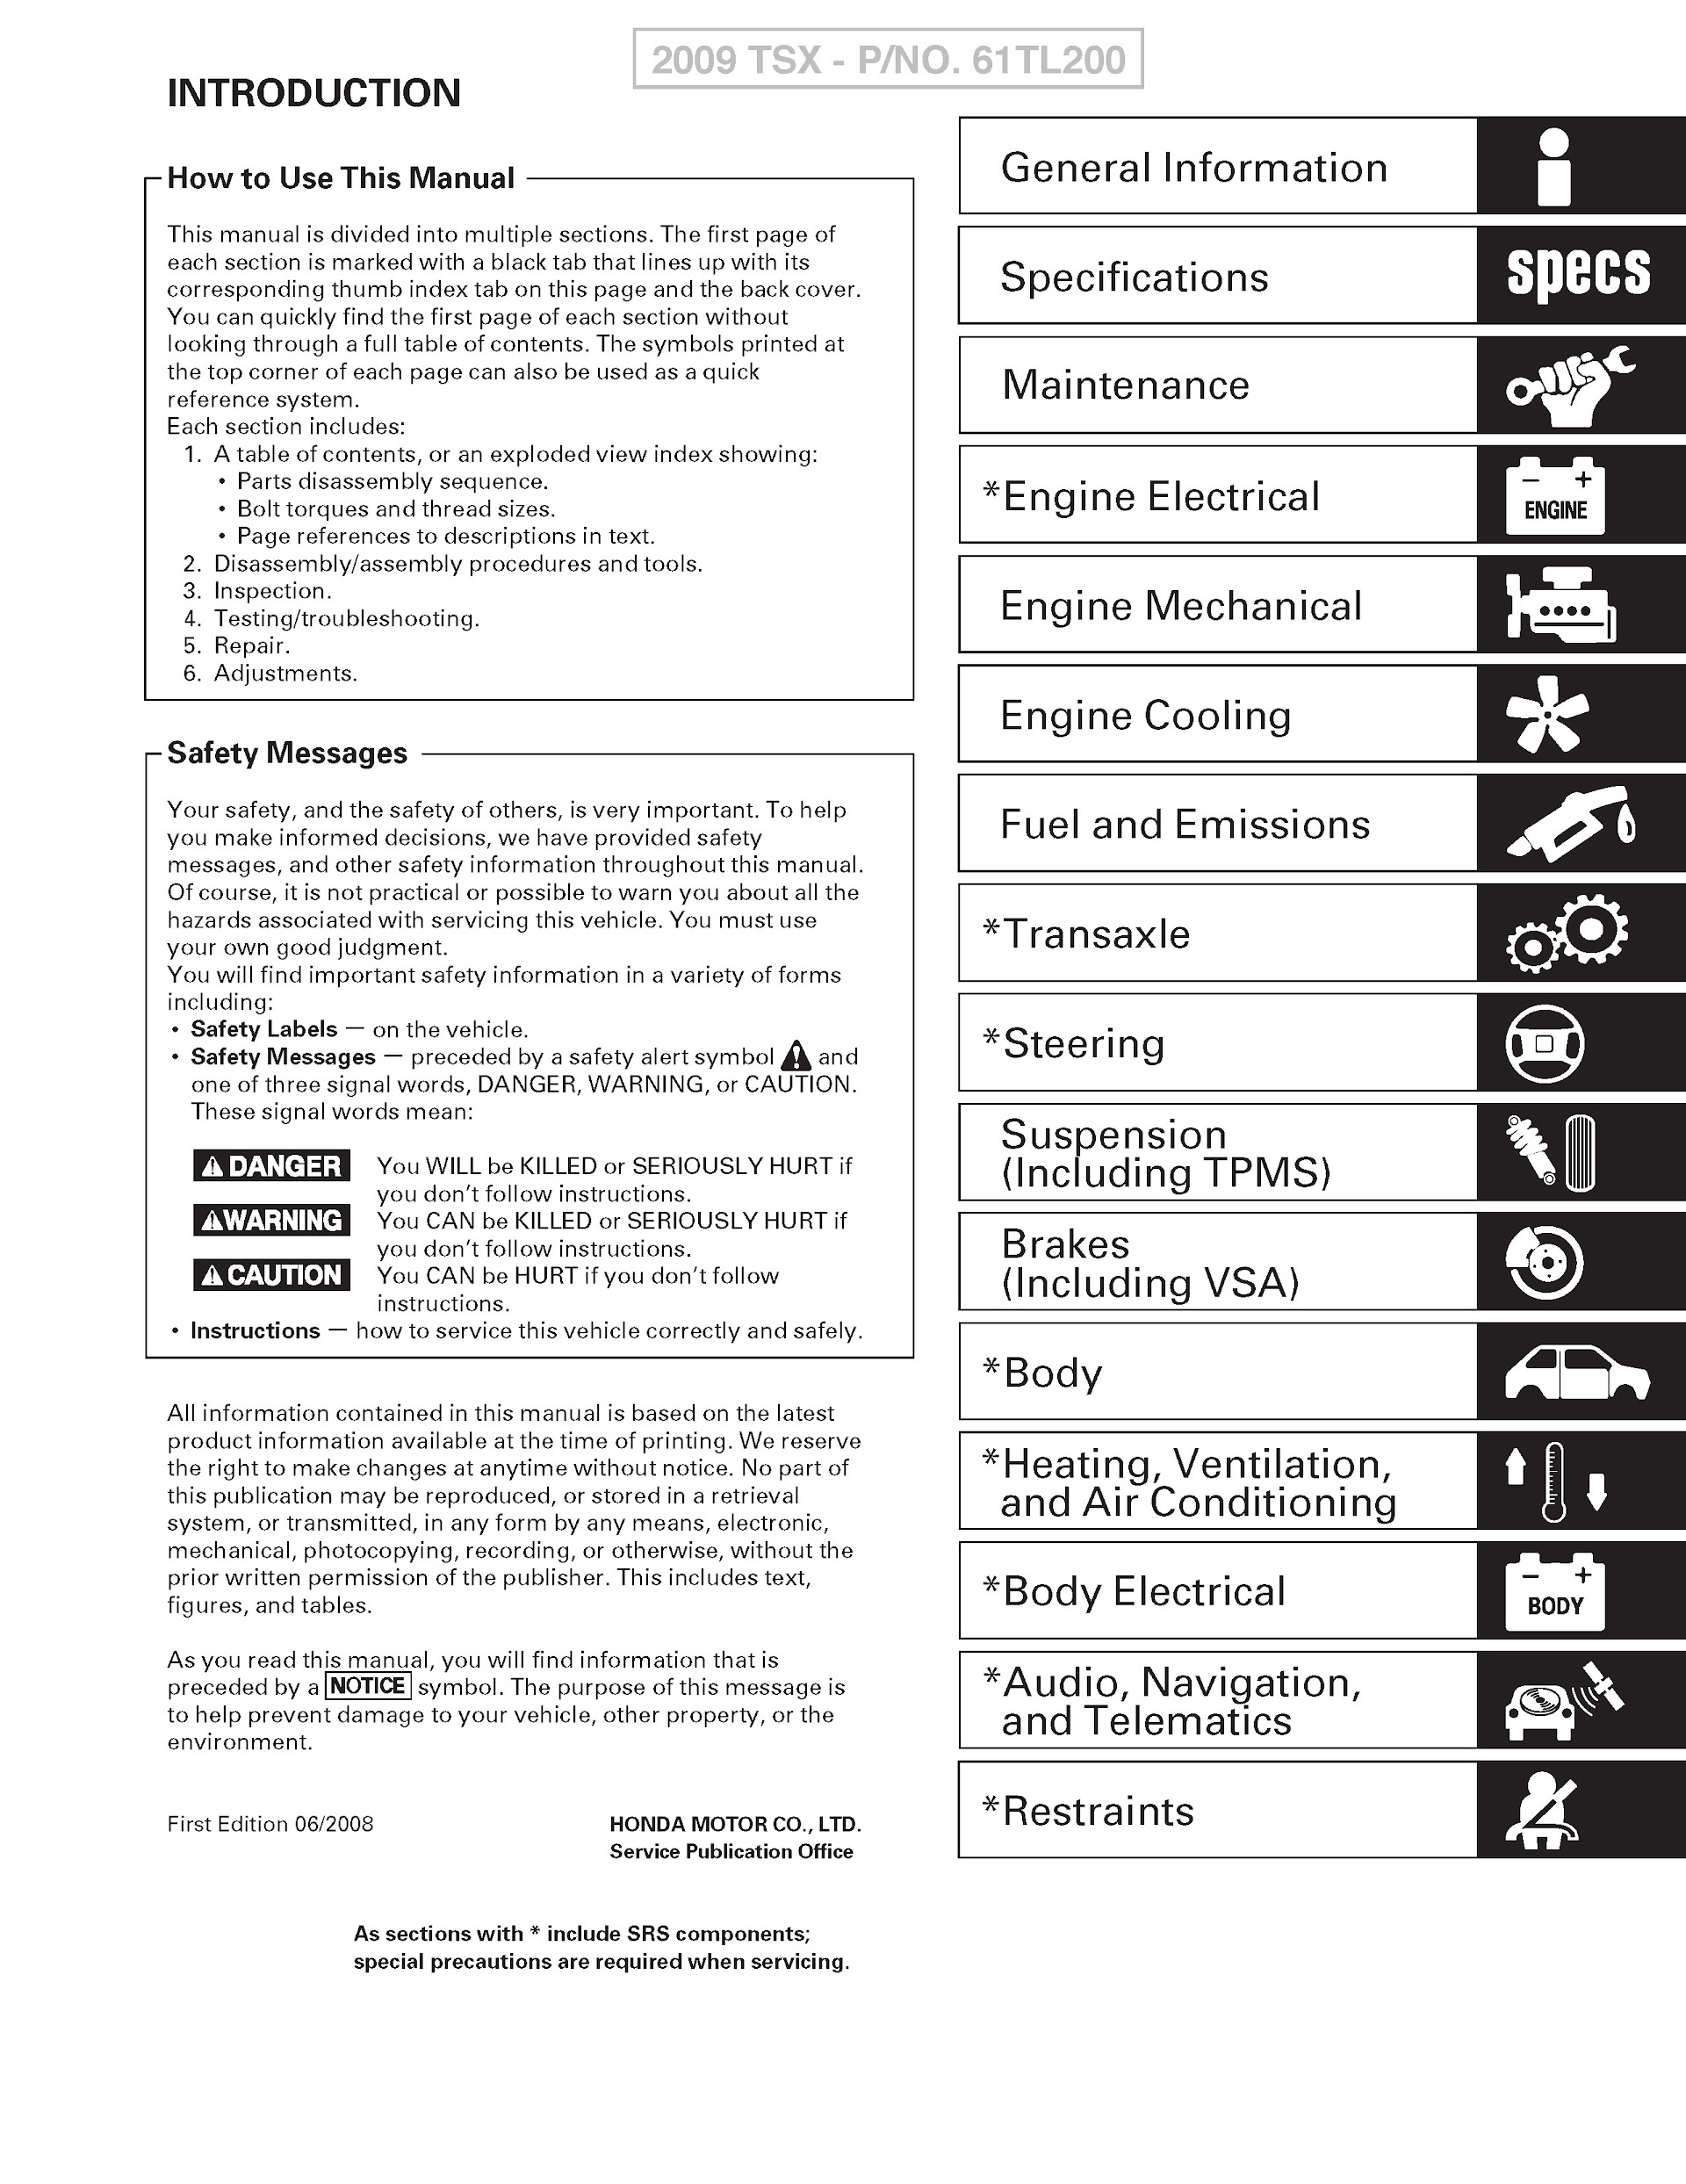 Download 2009-2010 Acura TSX Repair Manual